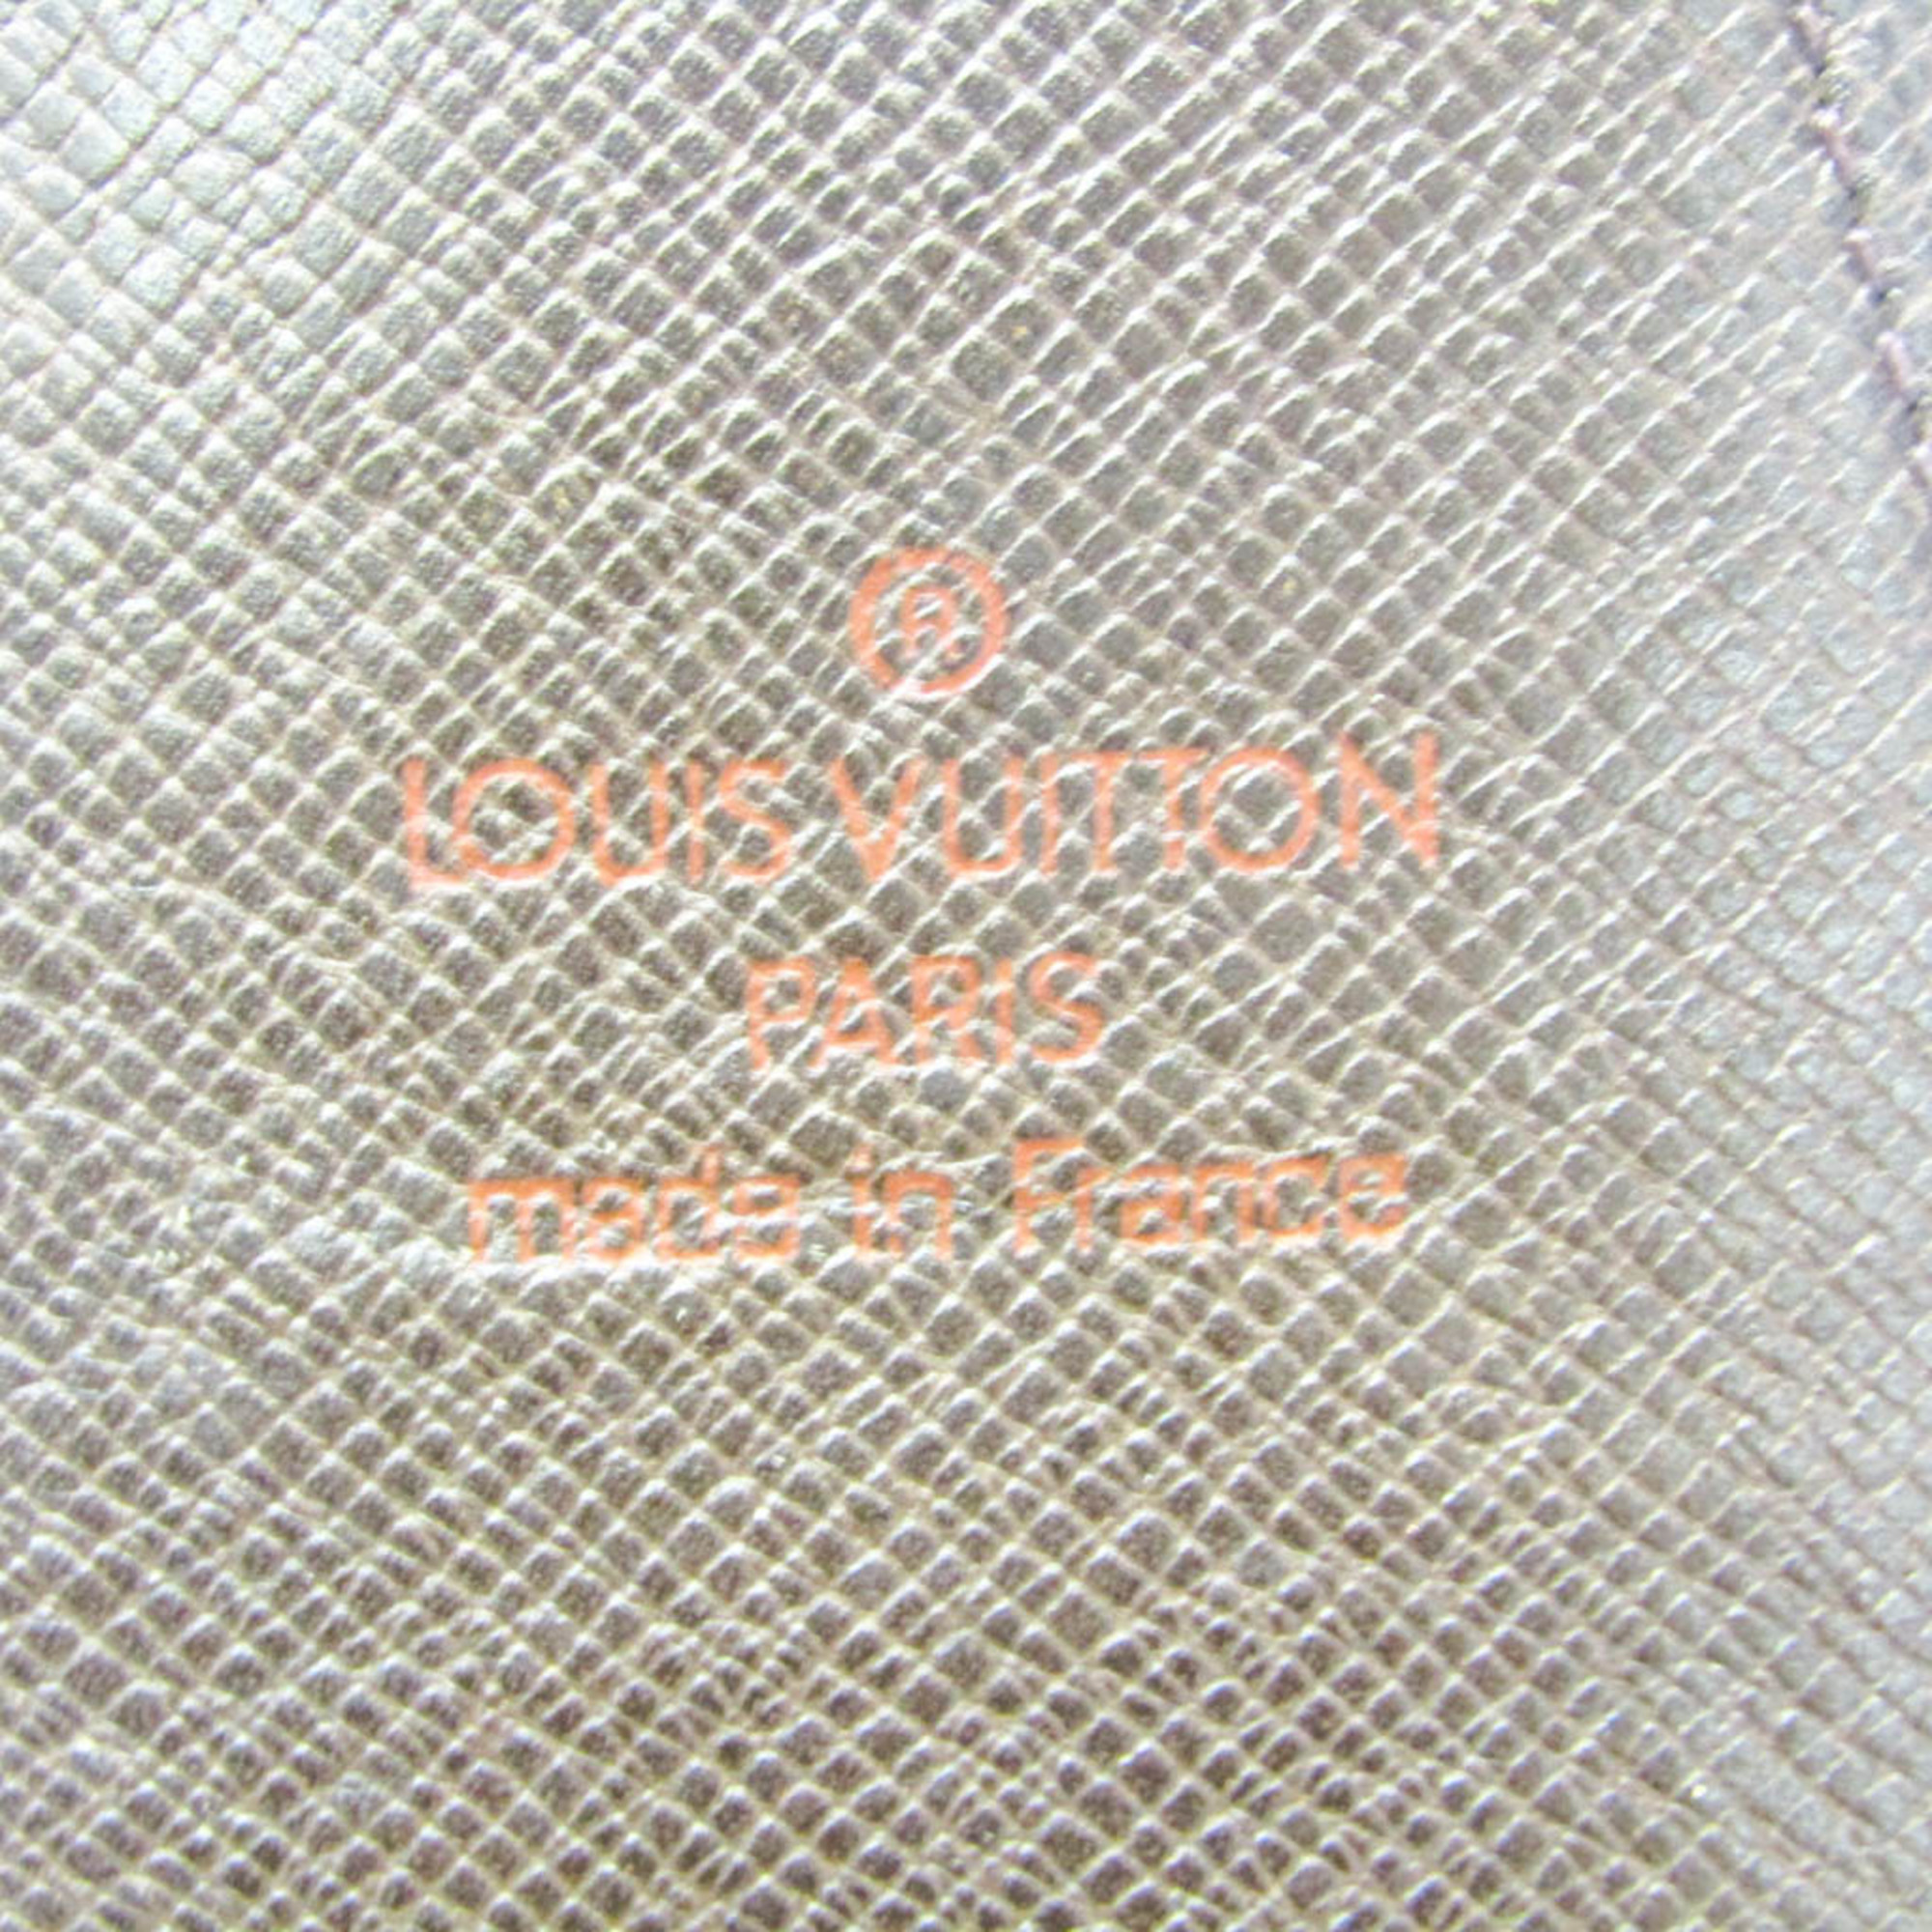 ルイ・ヴィトン(Louis Vuitton) ダミエ タバコケース ダミエキャンバス エベヌ エテュイ・シガレット N63024